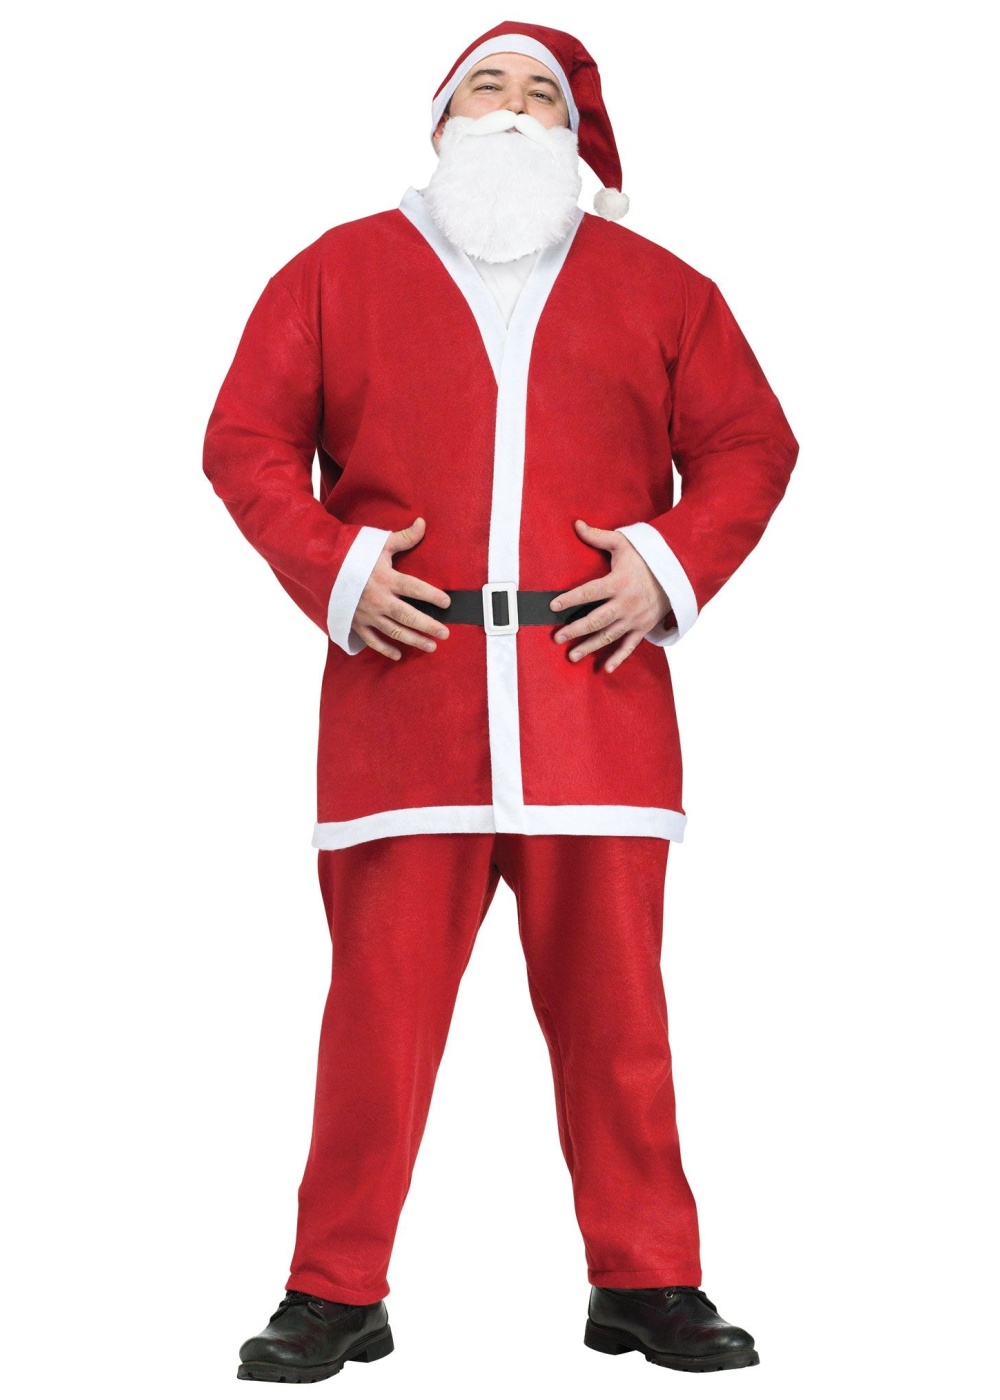 Pub Crawl Santa Plus Size Costume